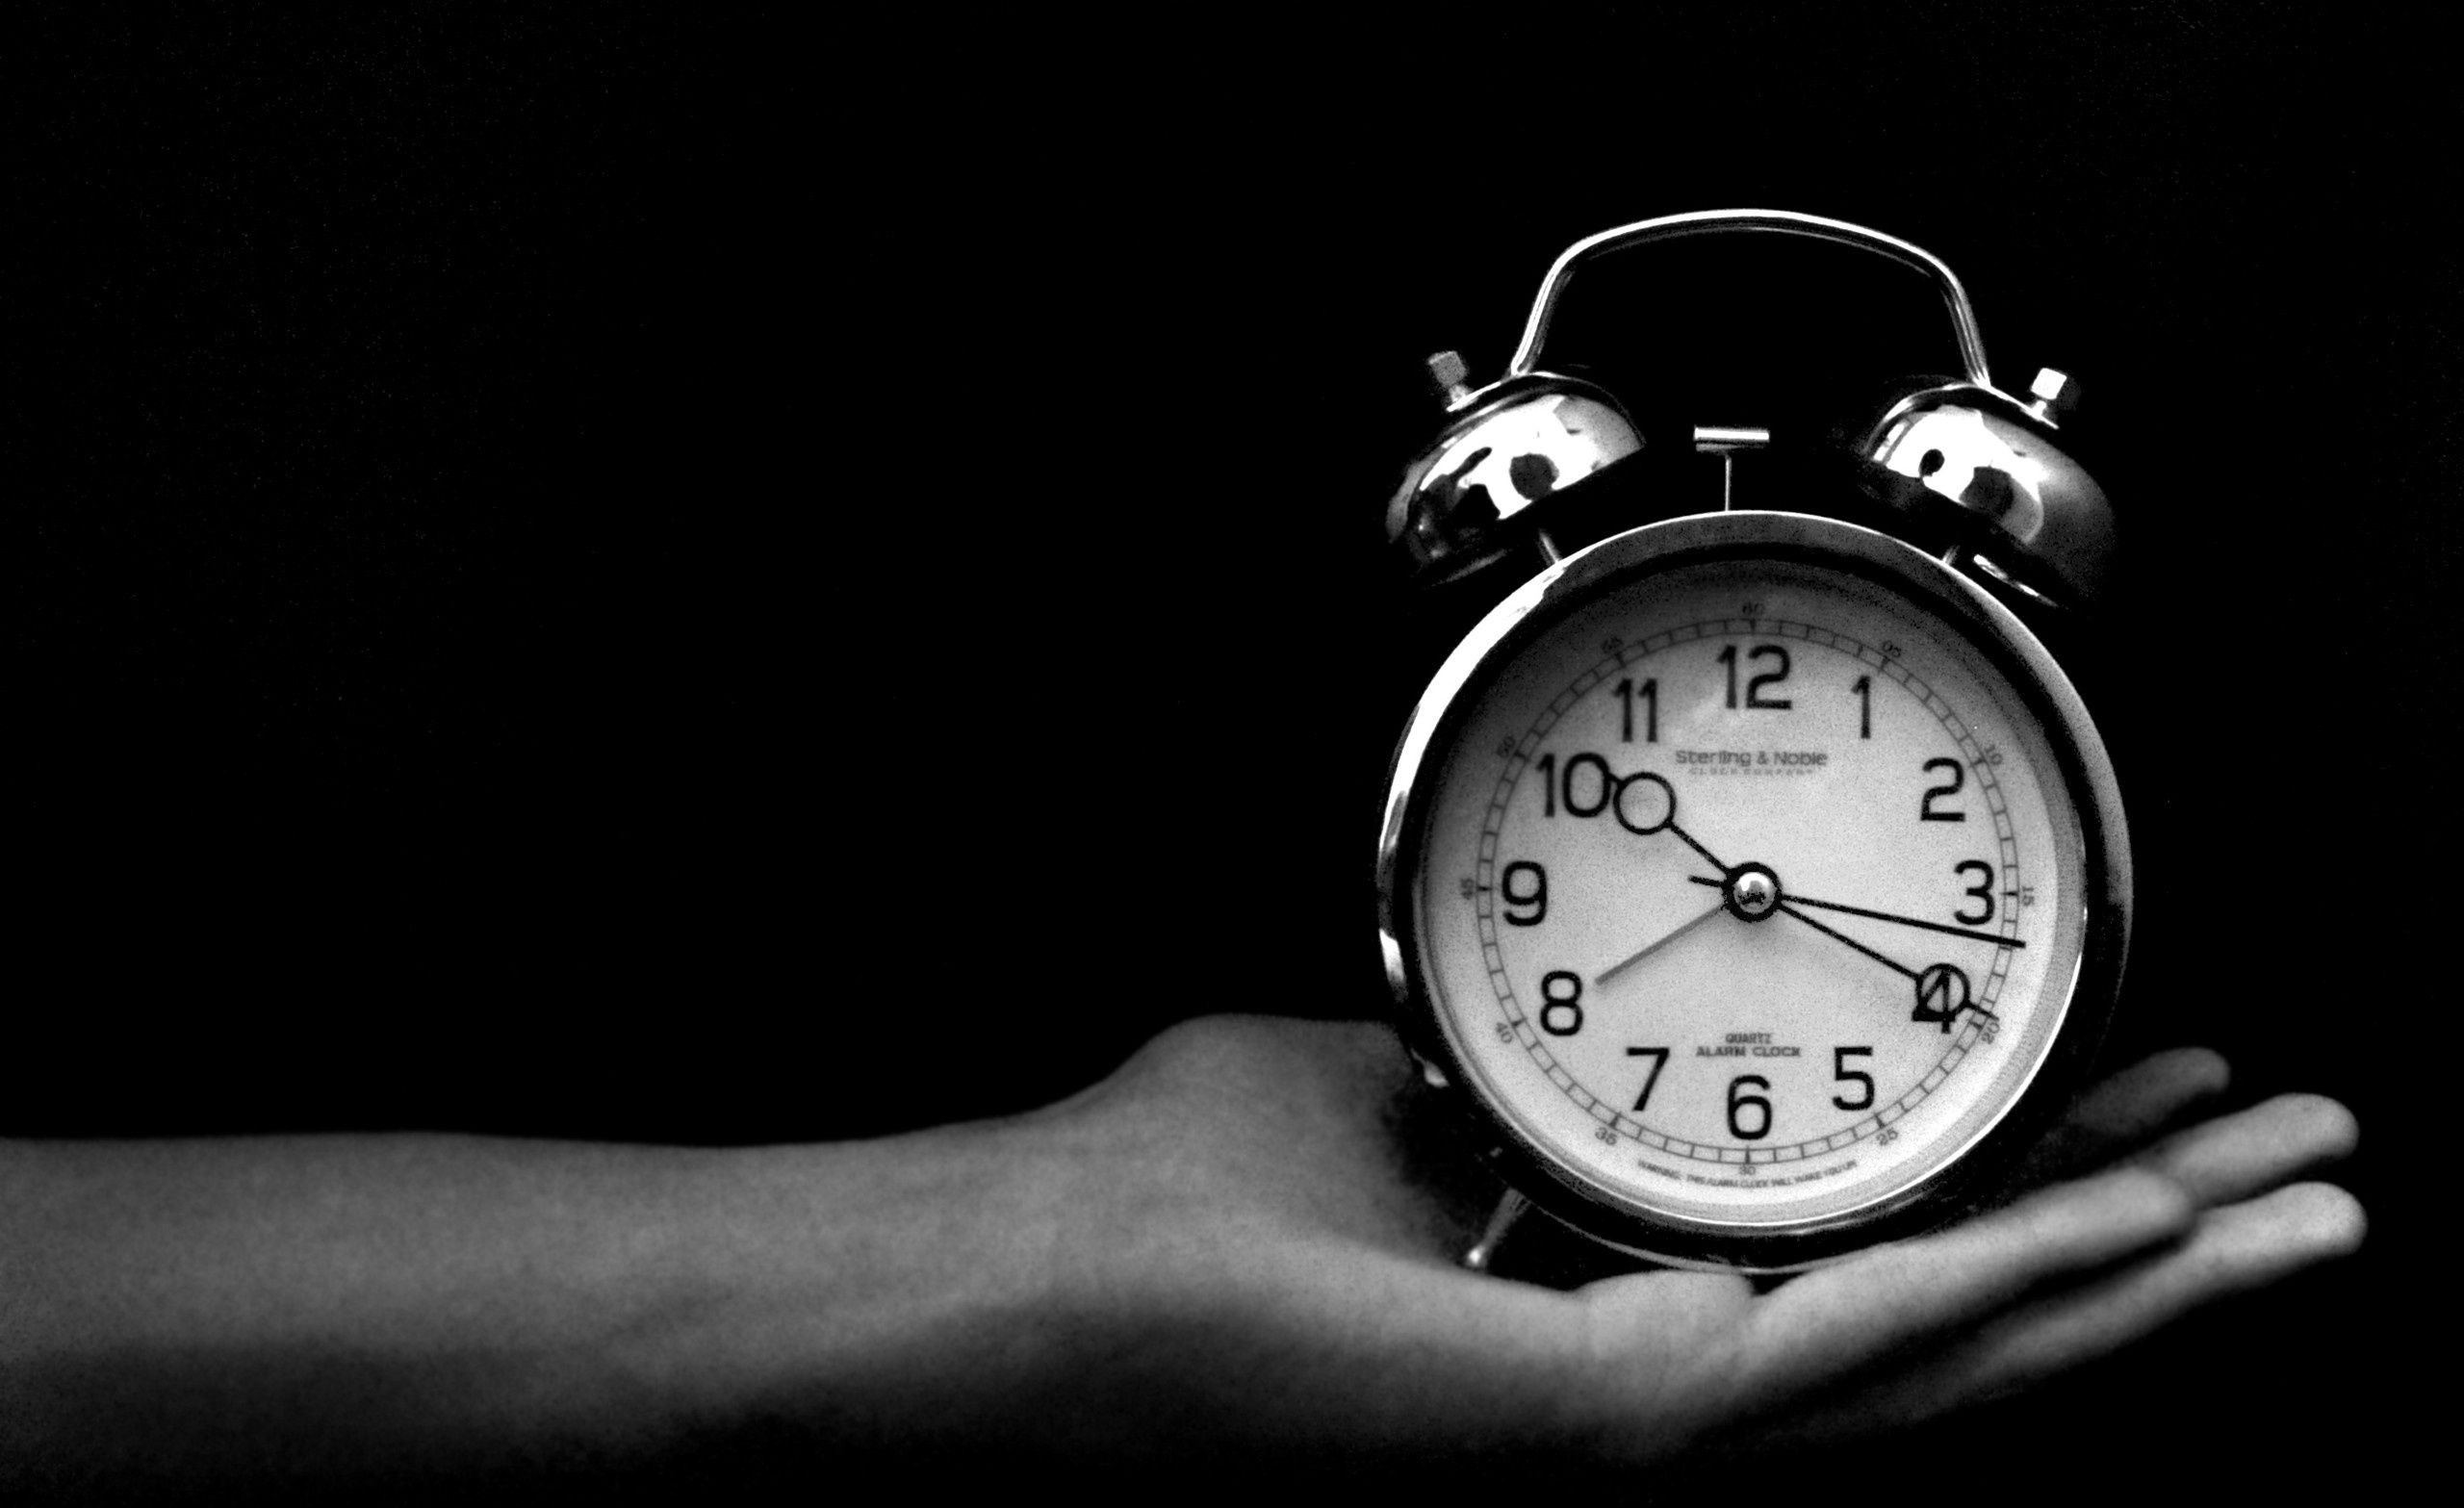 دانلود تصویر مفهومی سیاه و سفید از ساعت دارای زنگ قدیمی روی دست